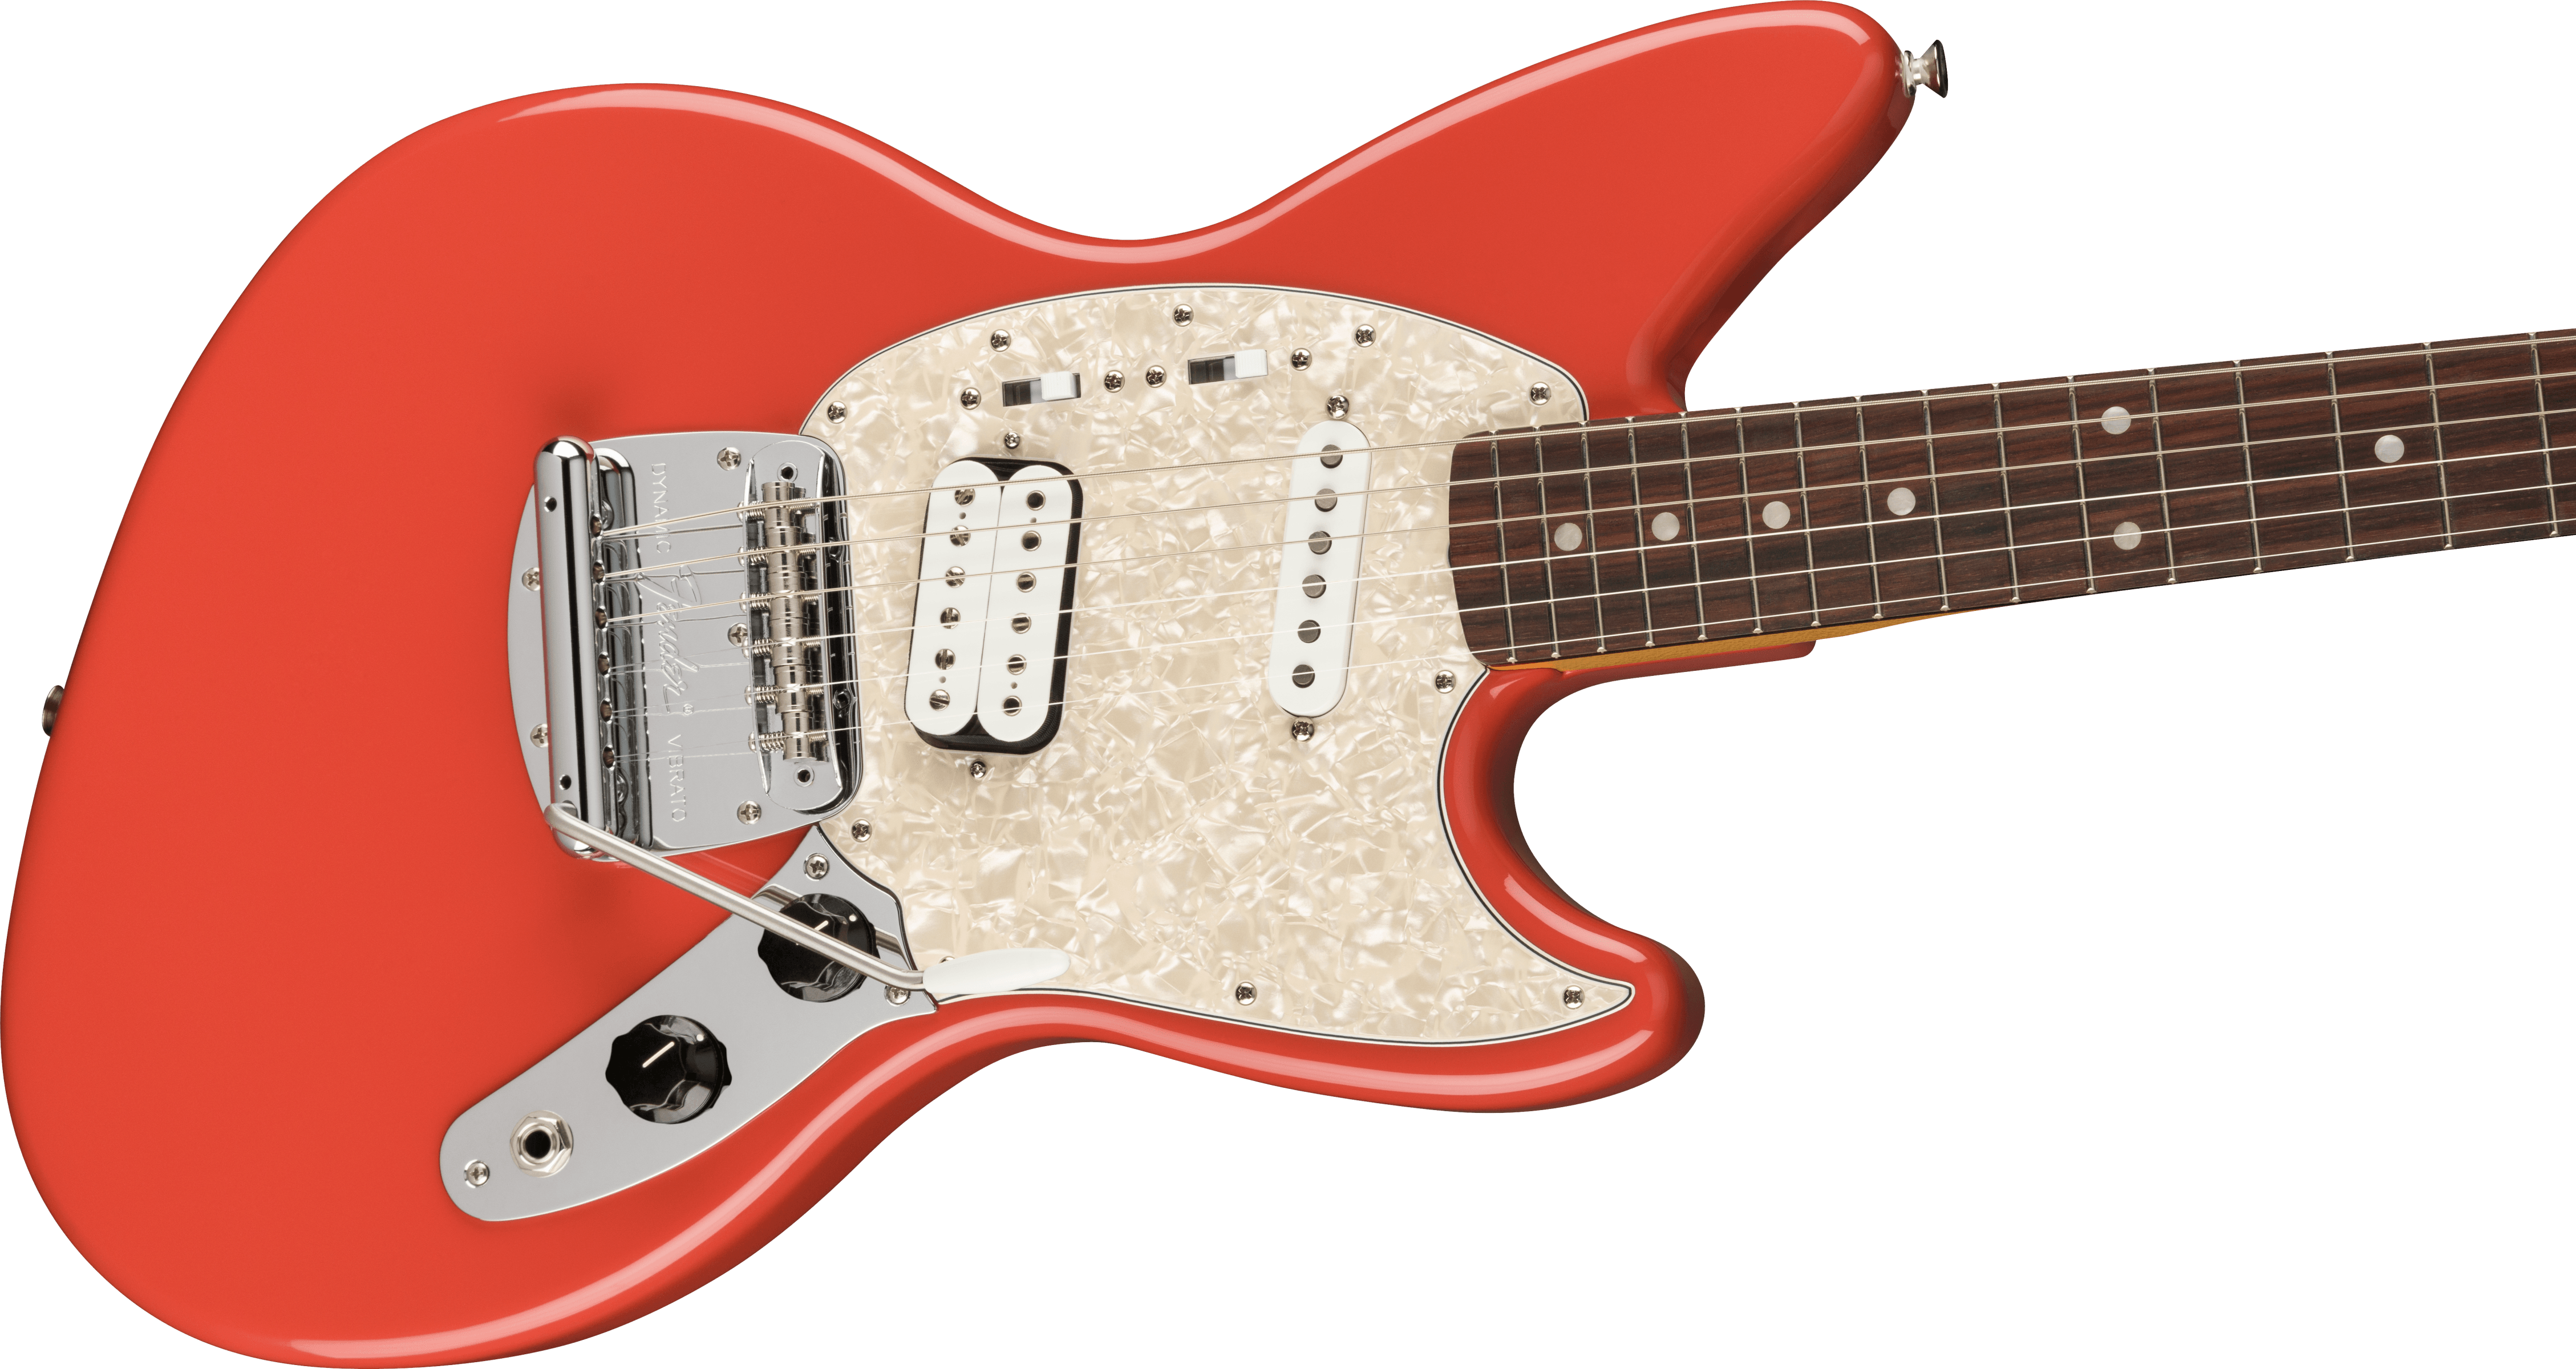 Fender Jag-stang Kurt Cobain Artist Hs Trem Rw - Fiesta Red - Guitare Électrique RÉtro Rock - Variation 3